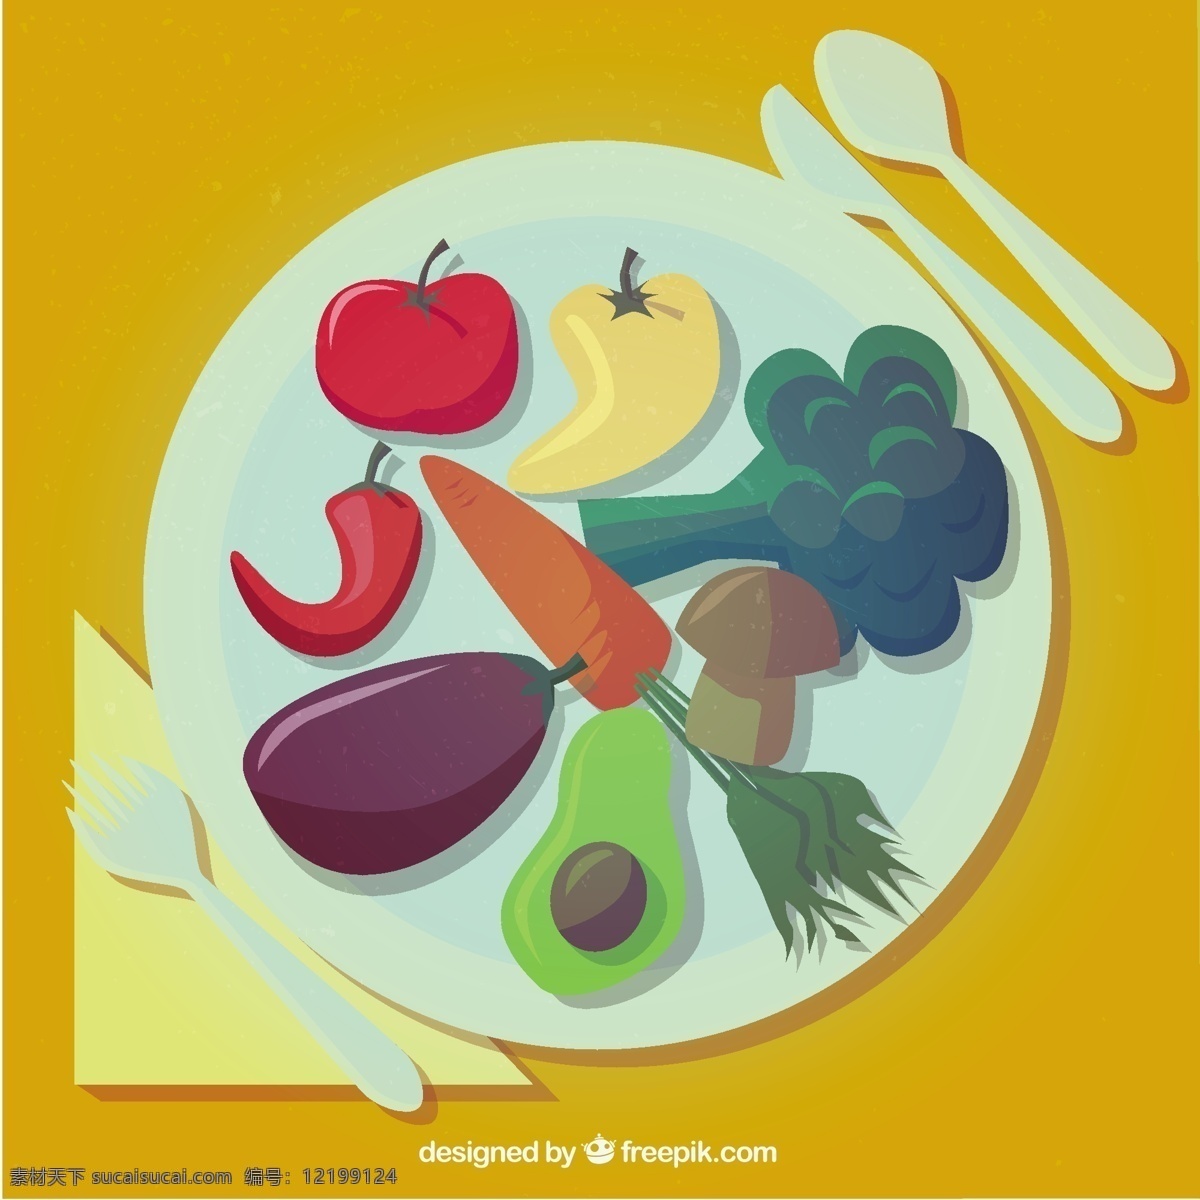 板与蔬菜 食品 卫生 蔬菜 有机板 健康 番茄 辣椒 健康食品 菜 胡萝卜 有机食品 牛油果 西兰花 茄子 橙色